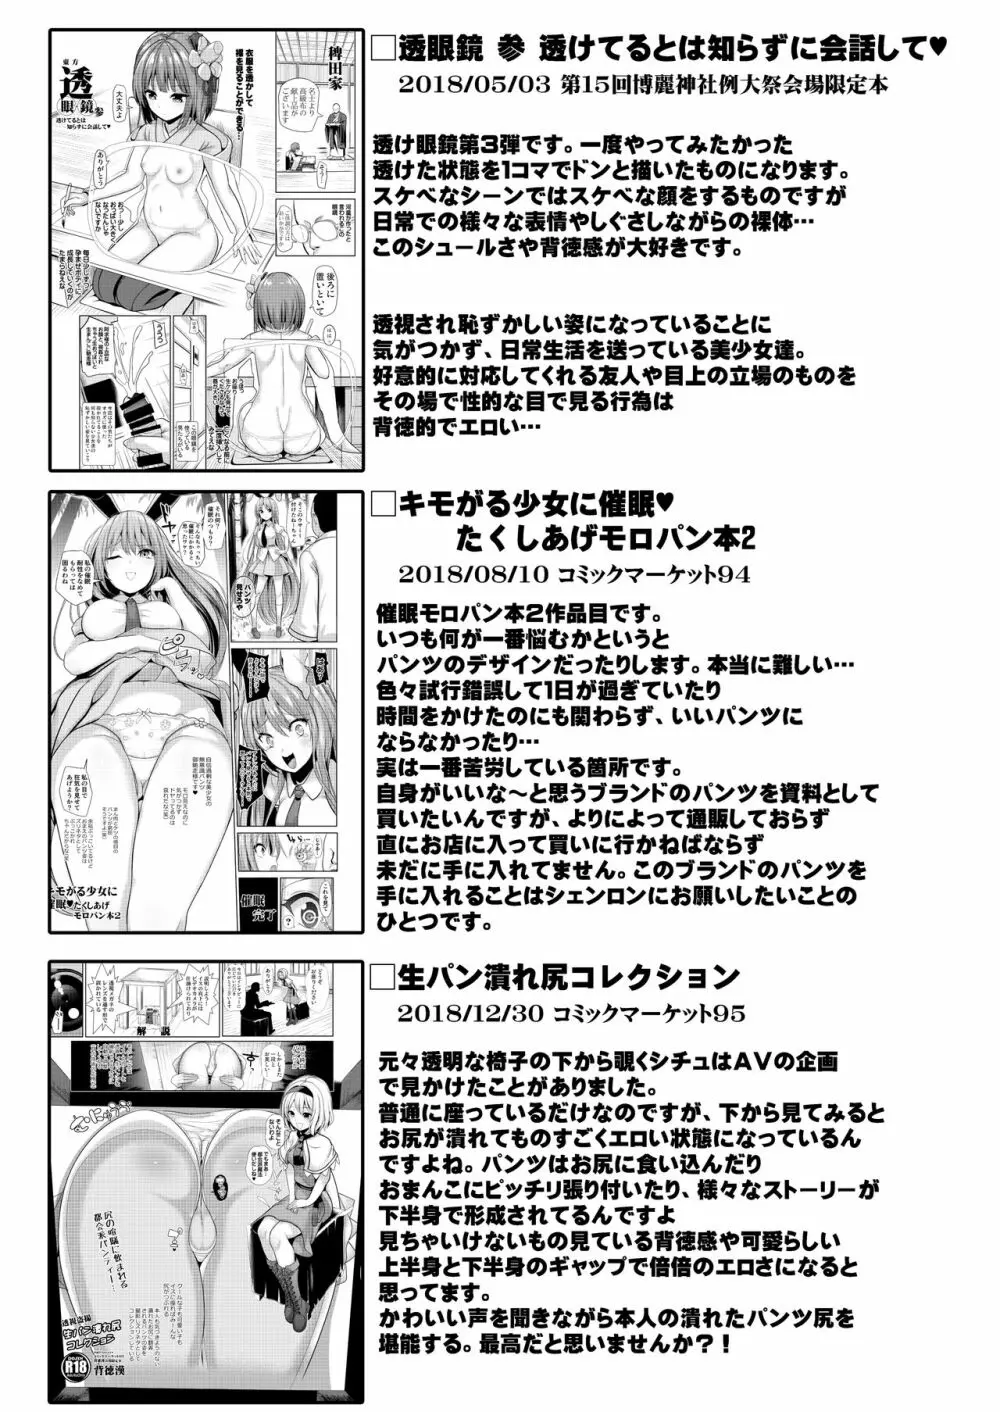 特殊シチュ短編総集編 東方シコるッ! 2 83ページ